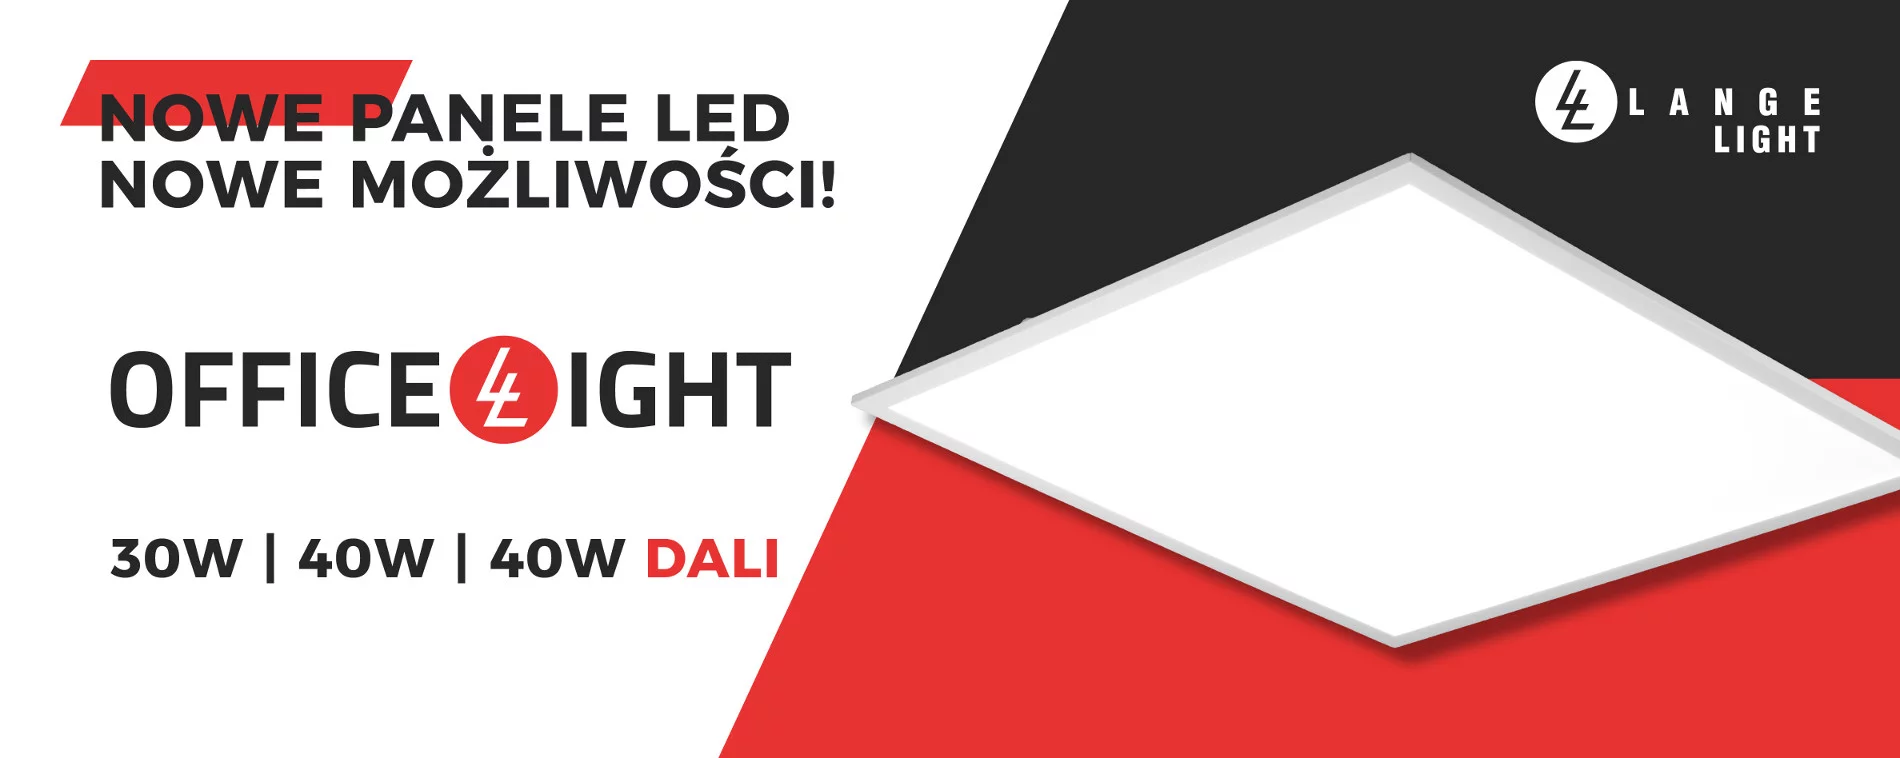 Nowe wersje sufitowych paneli LED Officelight w ofercie Lange Light!